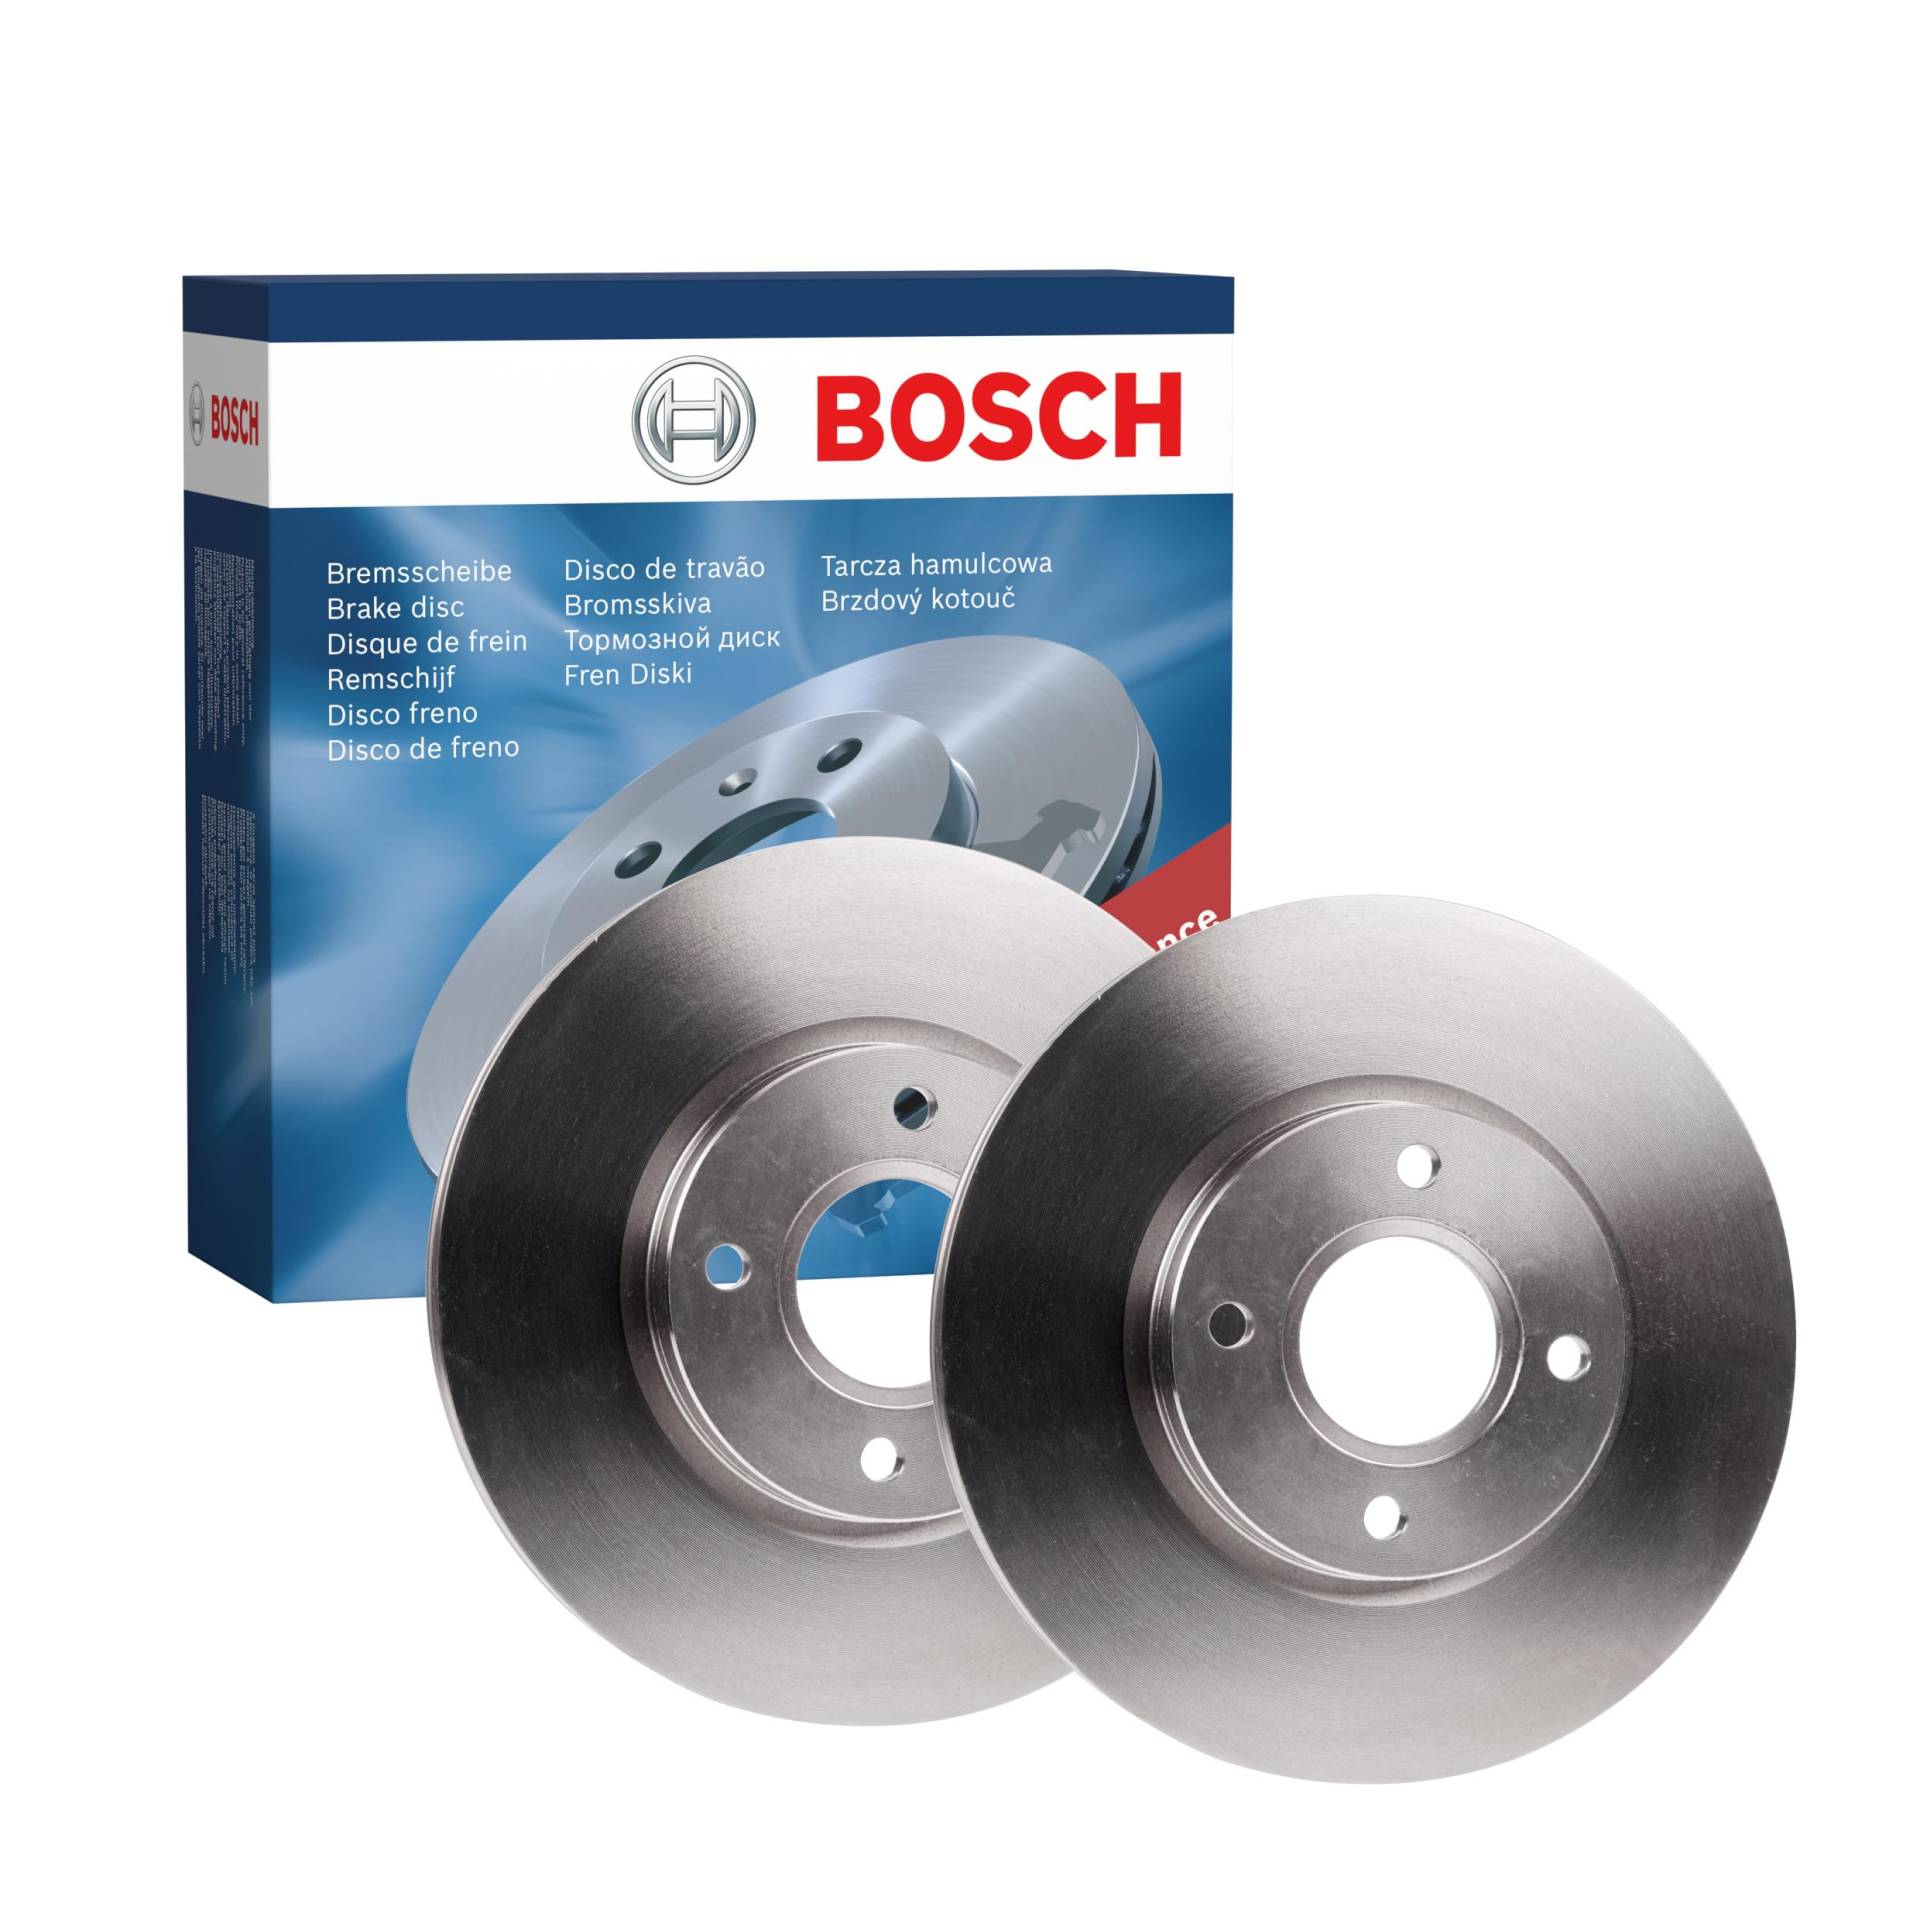 Bosch BD1676 Bremsscheiben - Vorderachse - ECE-R90 Zertifizierung - zwei Bremsscheiben pro Set von Bosch Automotive